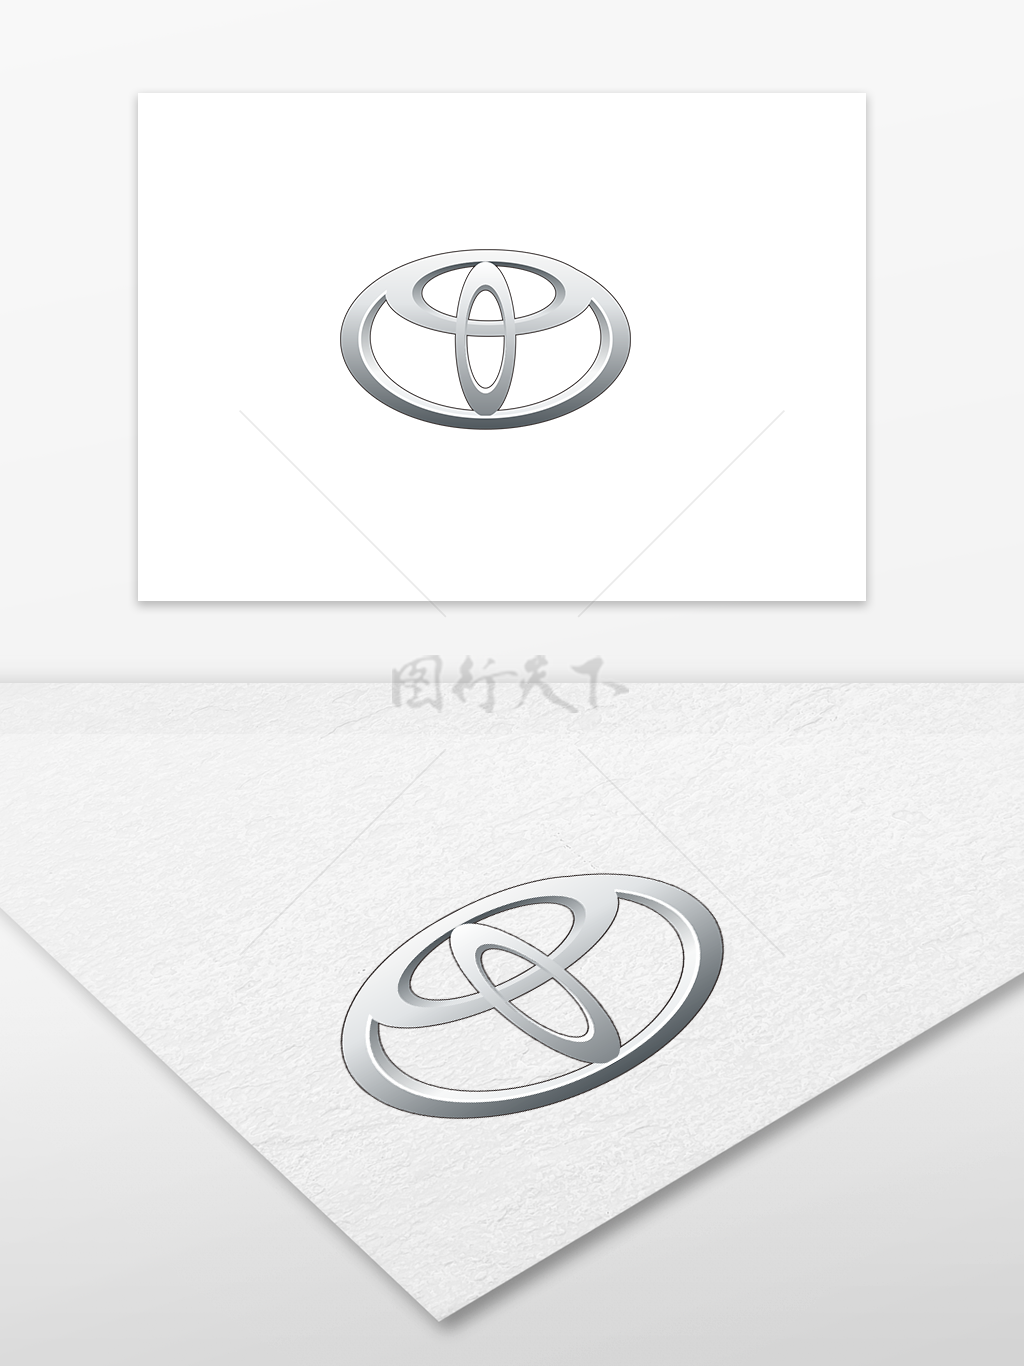 丰田汽车标志 矢量文件 cdr 汽车logo